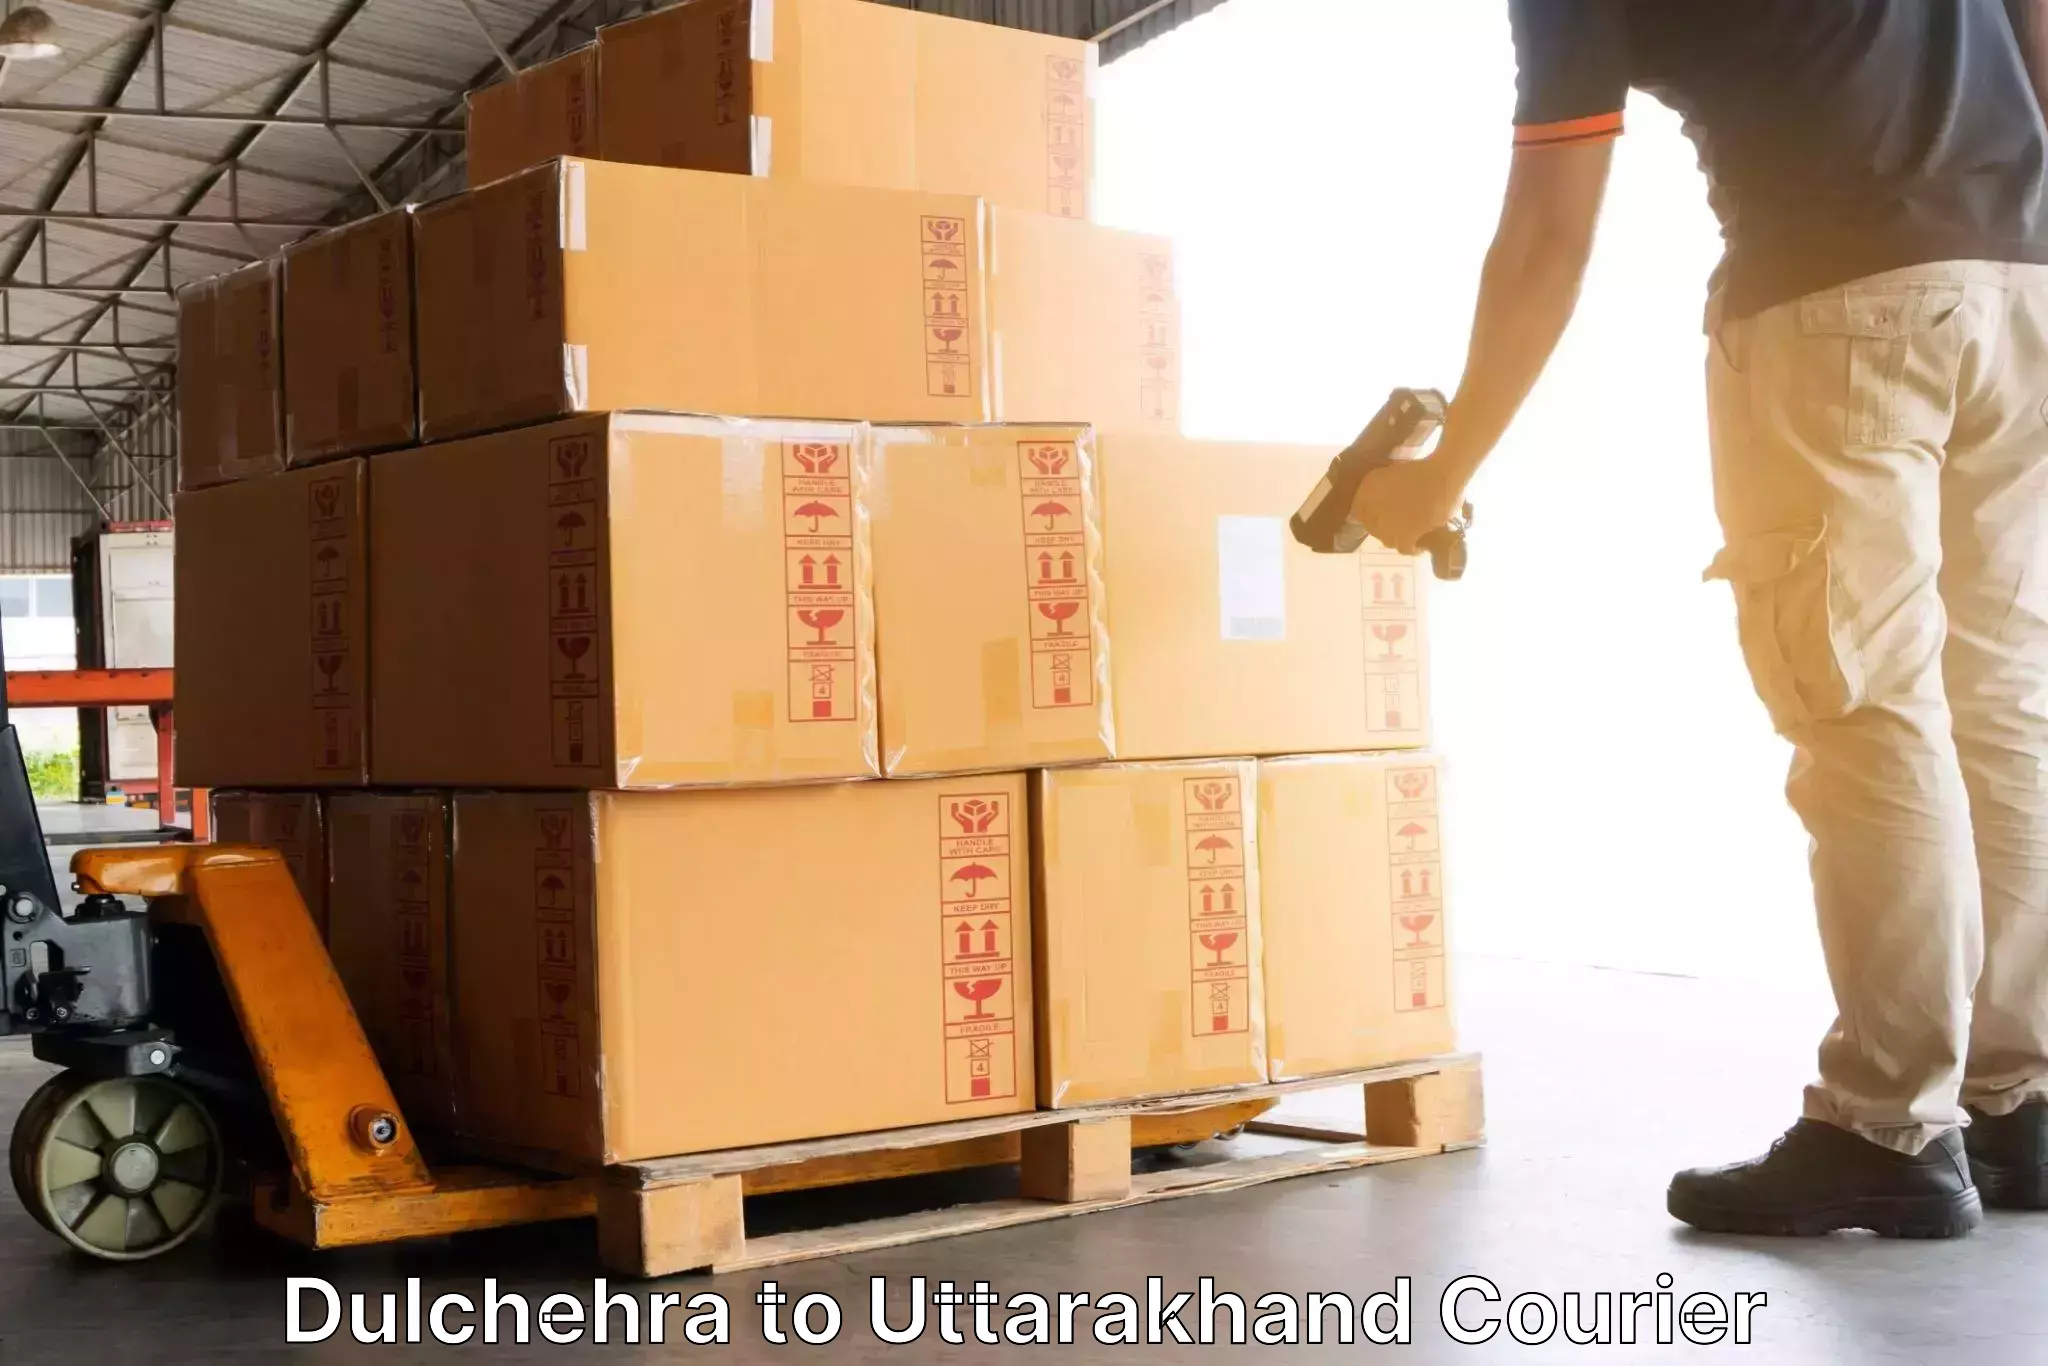 Supply chain efficiency Dulchehra to NIT Garhwal